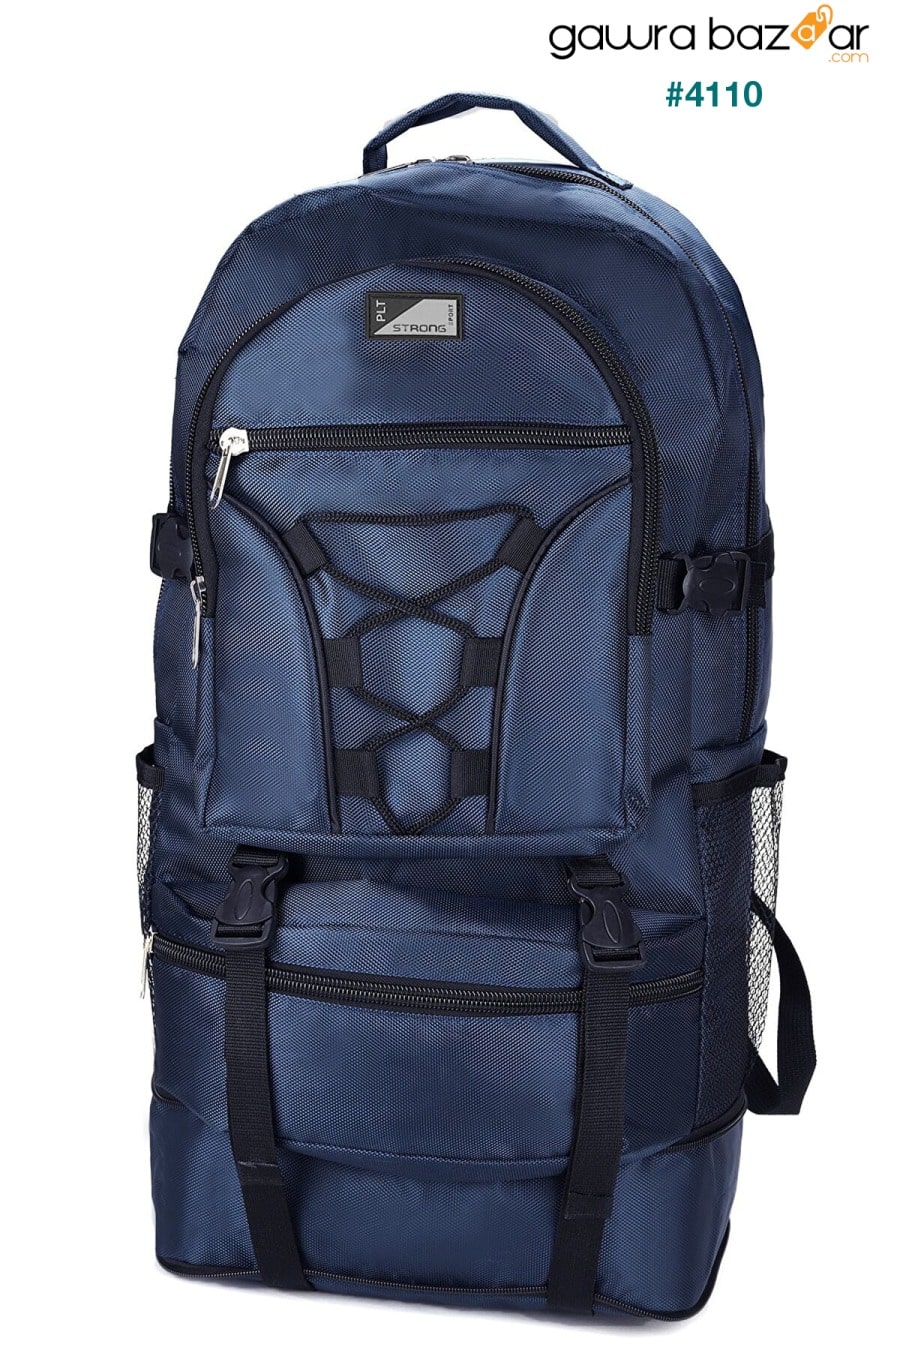 حقيبة ماونتينير St-02 مضادة للماء متعددة العيون للسفر والجبل أزرق كحلي Fiyaka 4